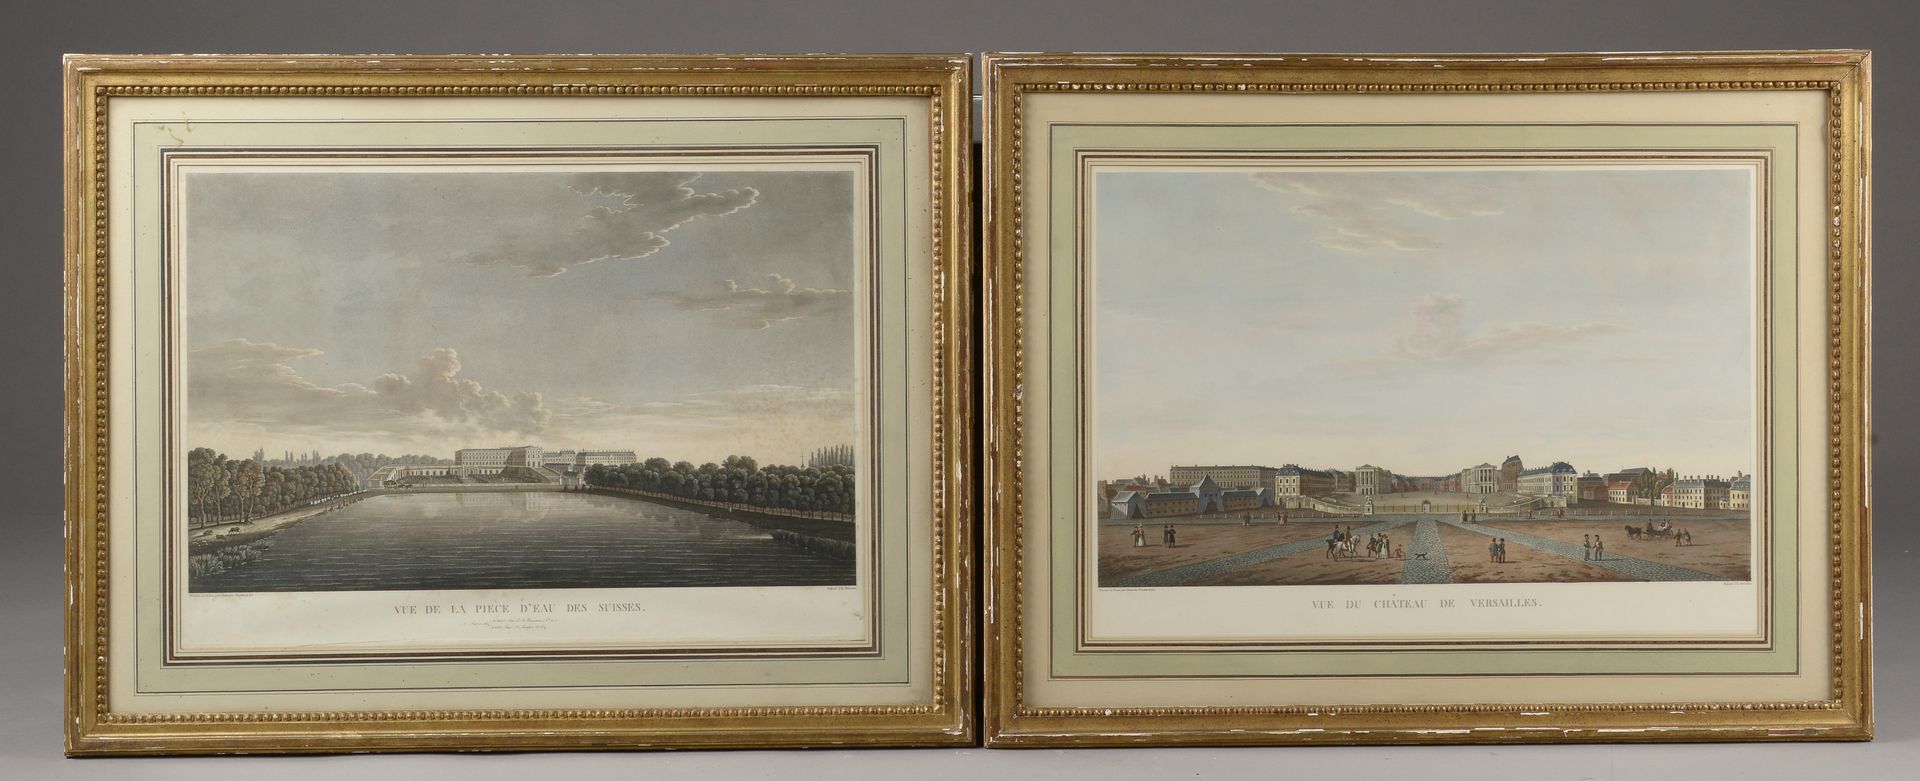 Null Michel François DAMANE-DEMARTRAIS (Paris, 1763 - Paris, 1827).
"View of the&hellip;